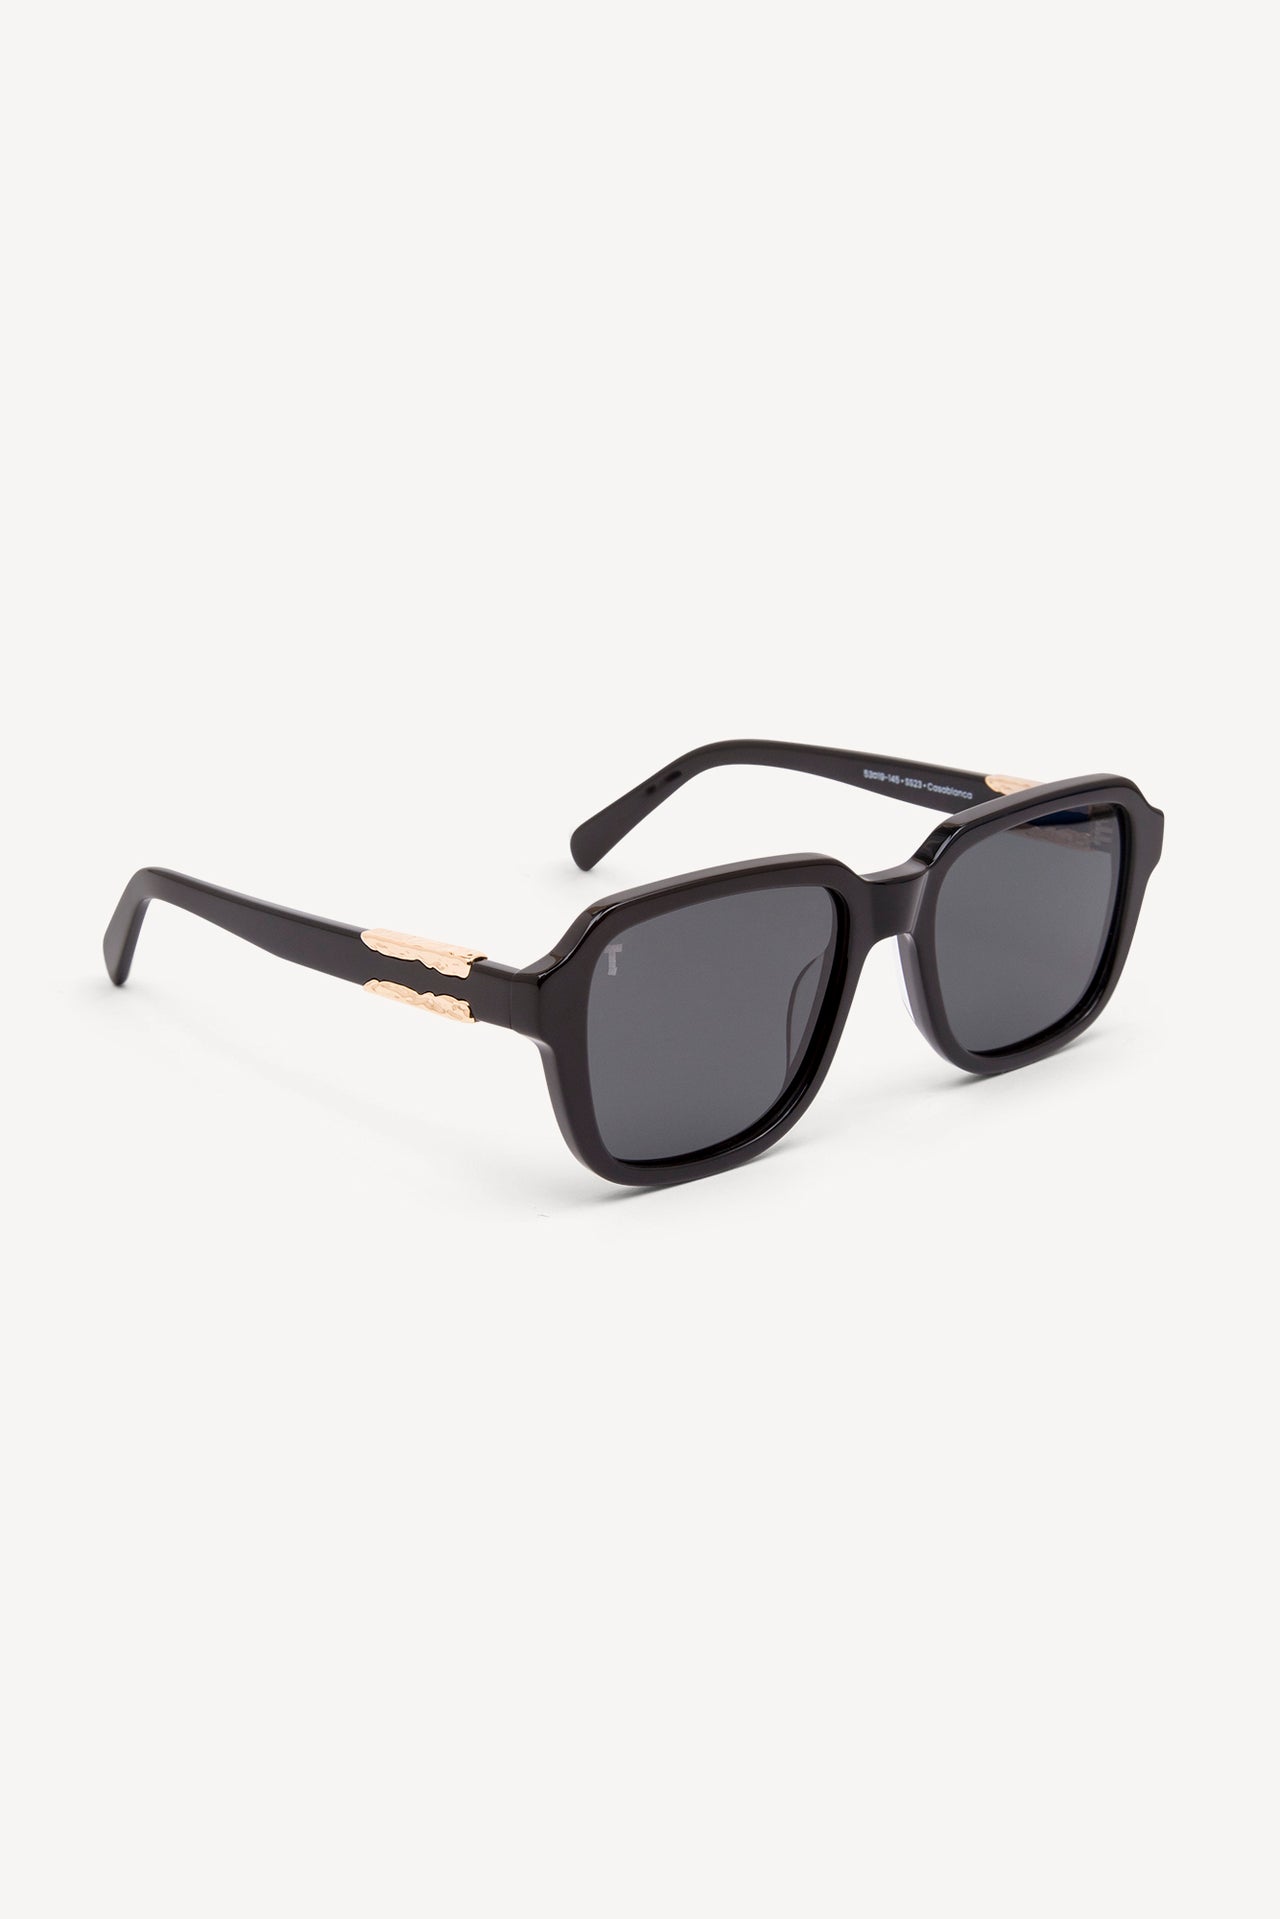 TOATIE Casablanca Square Sunglasses BLACK/BLACK